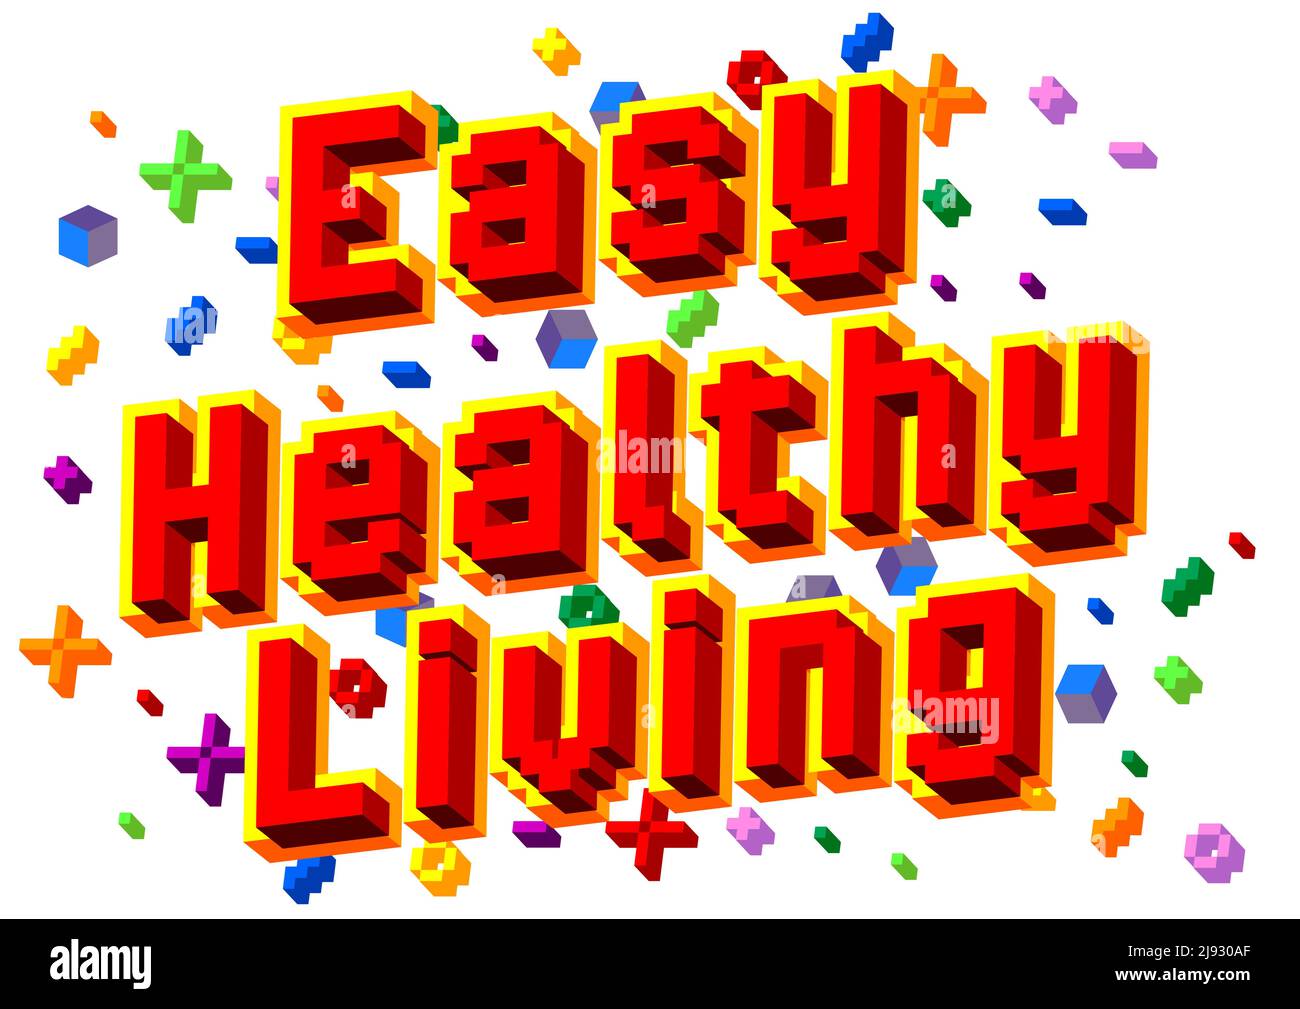 Easy Healthy Living. Verpixeltes Wort mit geometrischem grafischem Hintergrund. Vektorgrafik Cartoon-Illustration. Stock Vektor